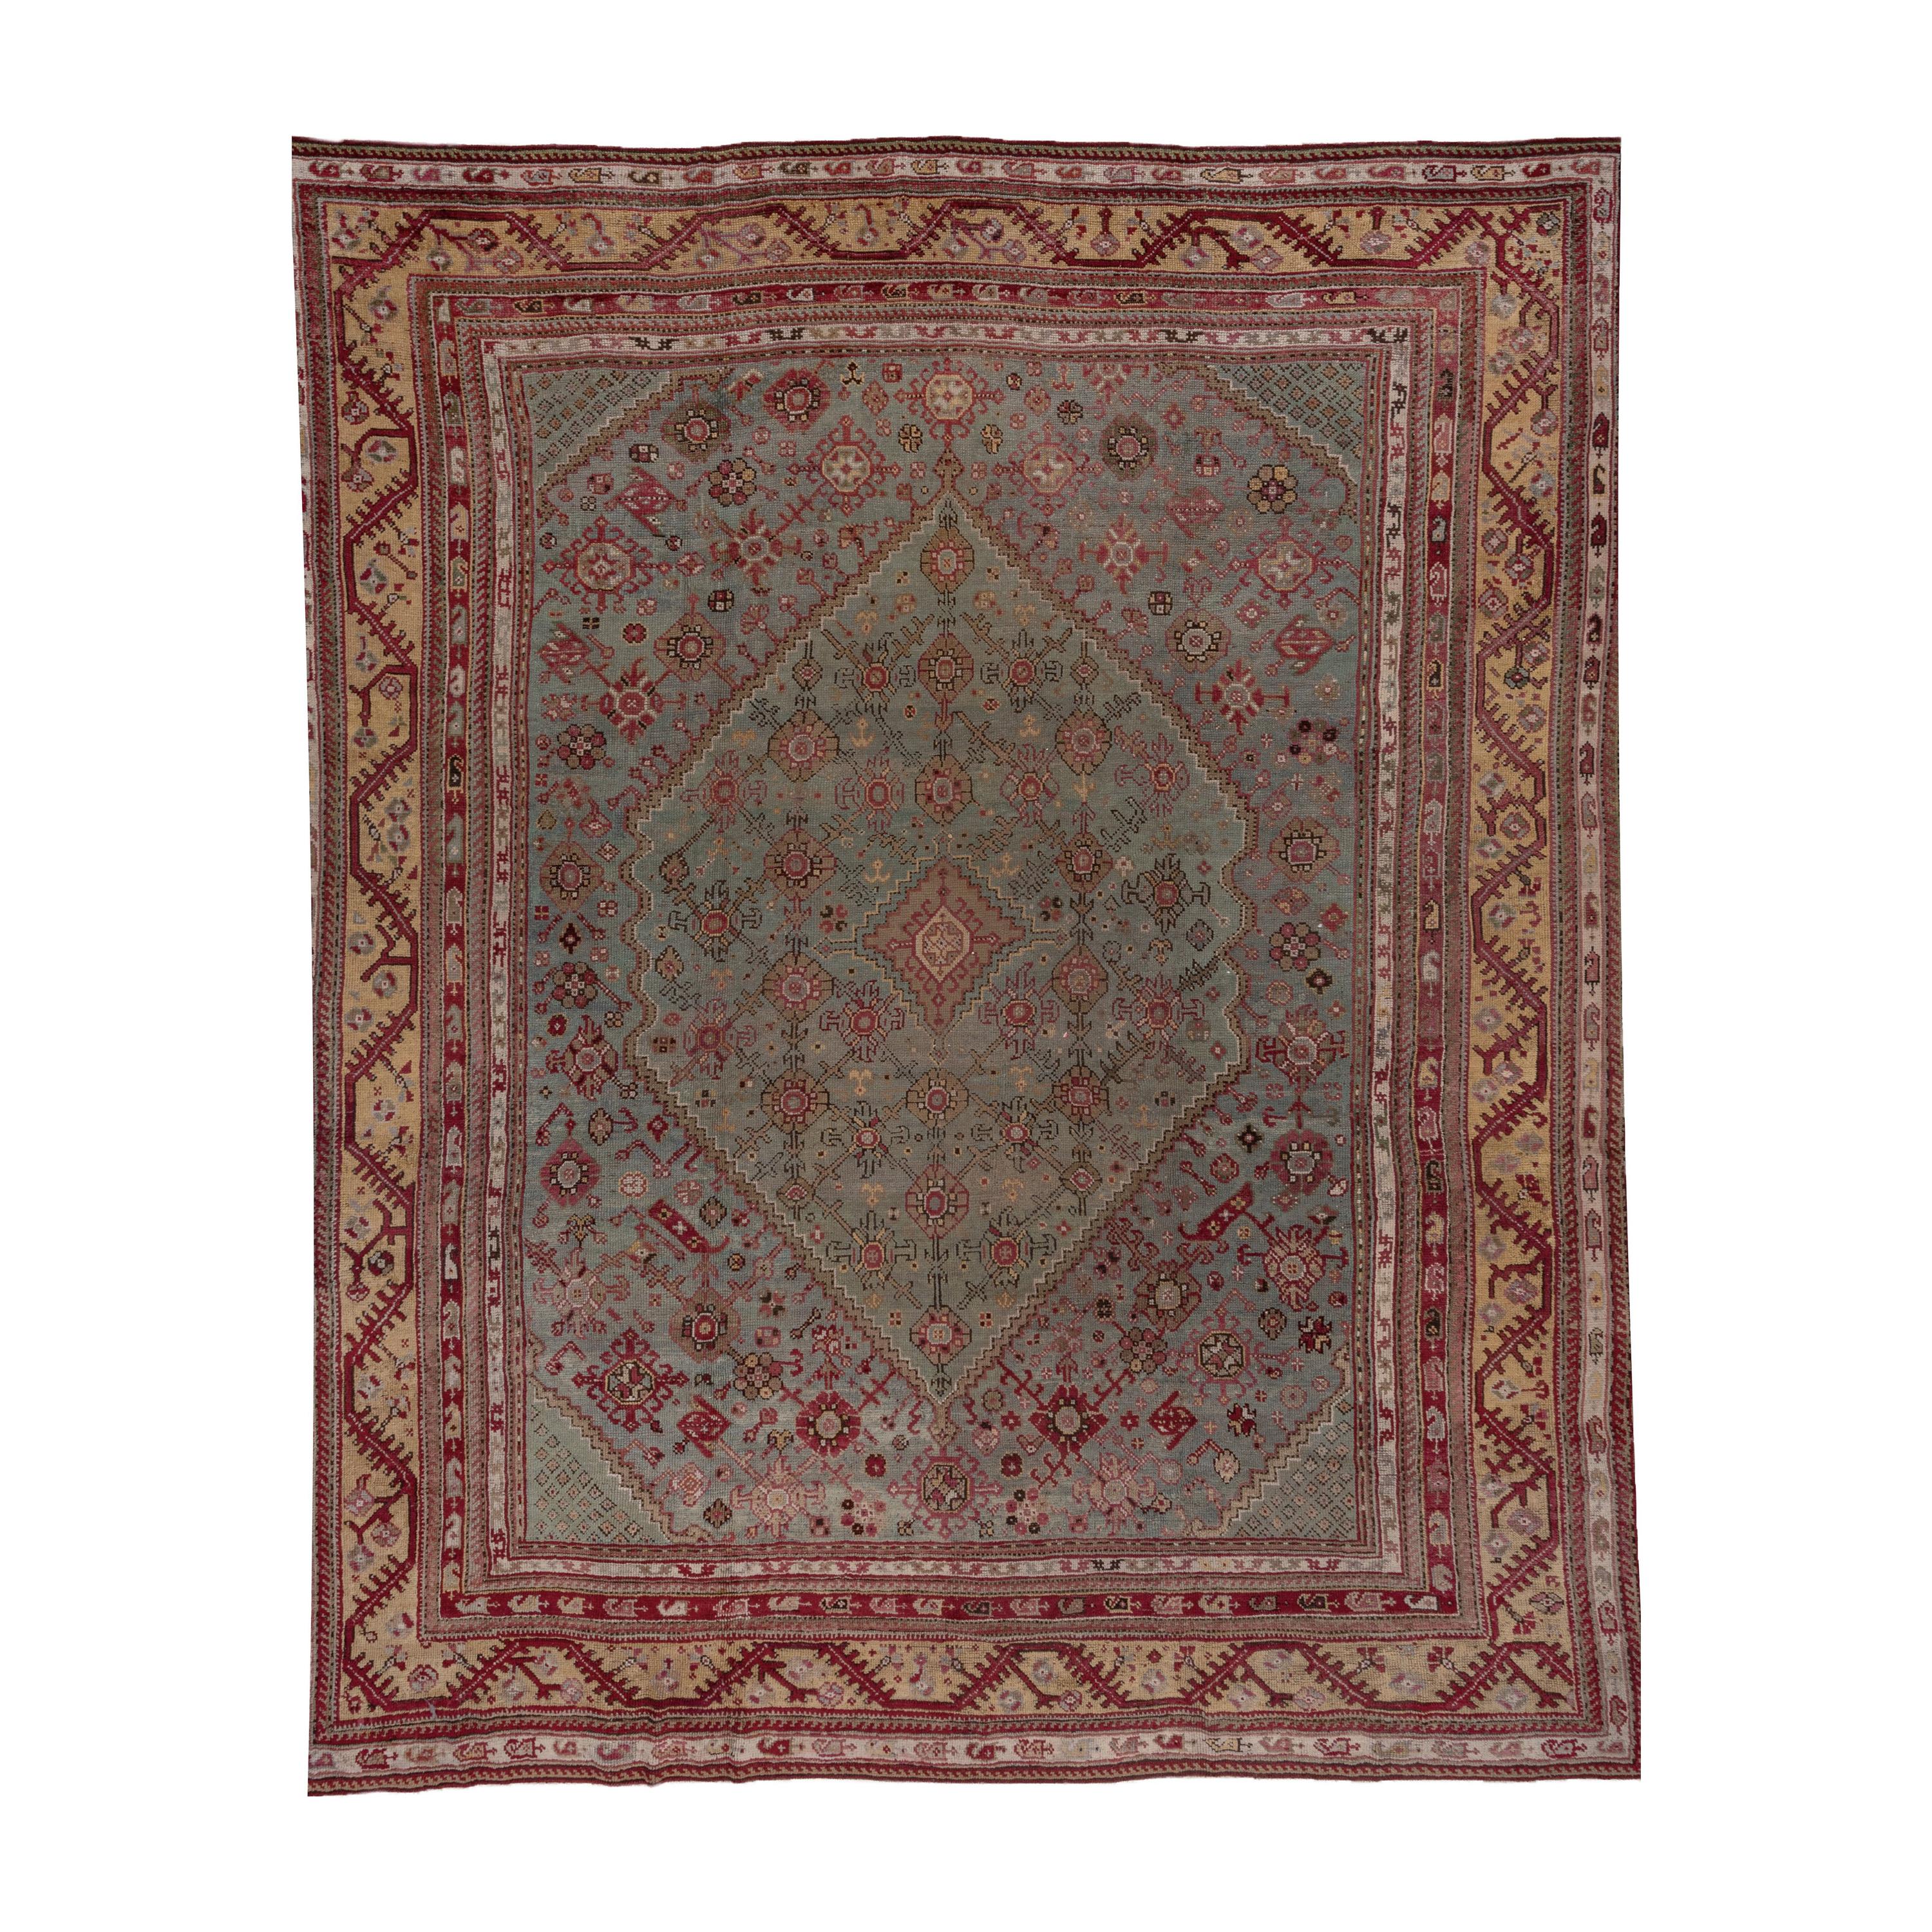 Antique Turkish Oushak Carpet, Light Blue Field, Citron Border & Plum Accents